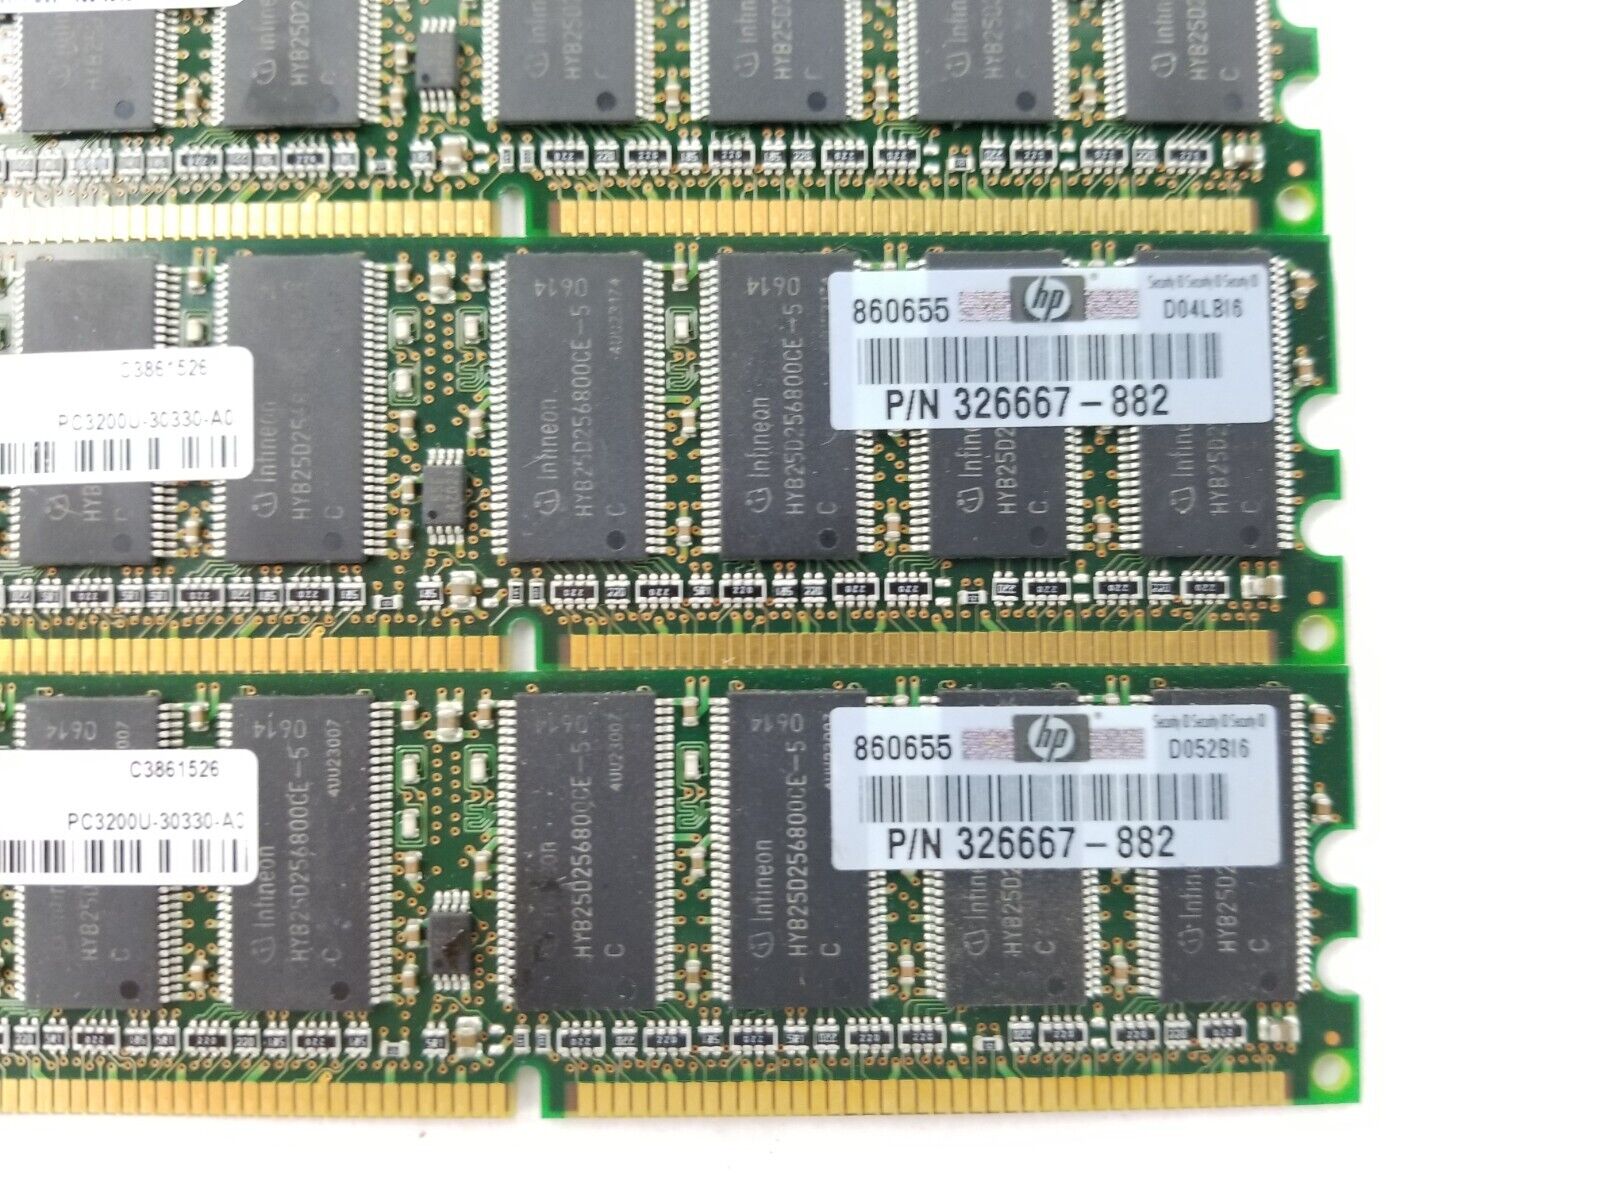 Lot of (3) Infineon HYD64D32300HU-5-C 256MB DDR 400 CL3 PC3200U-30330-A0